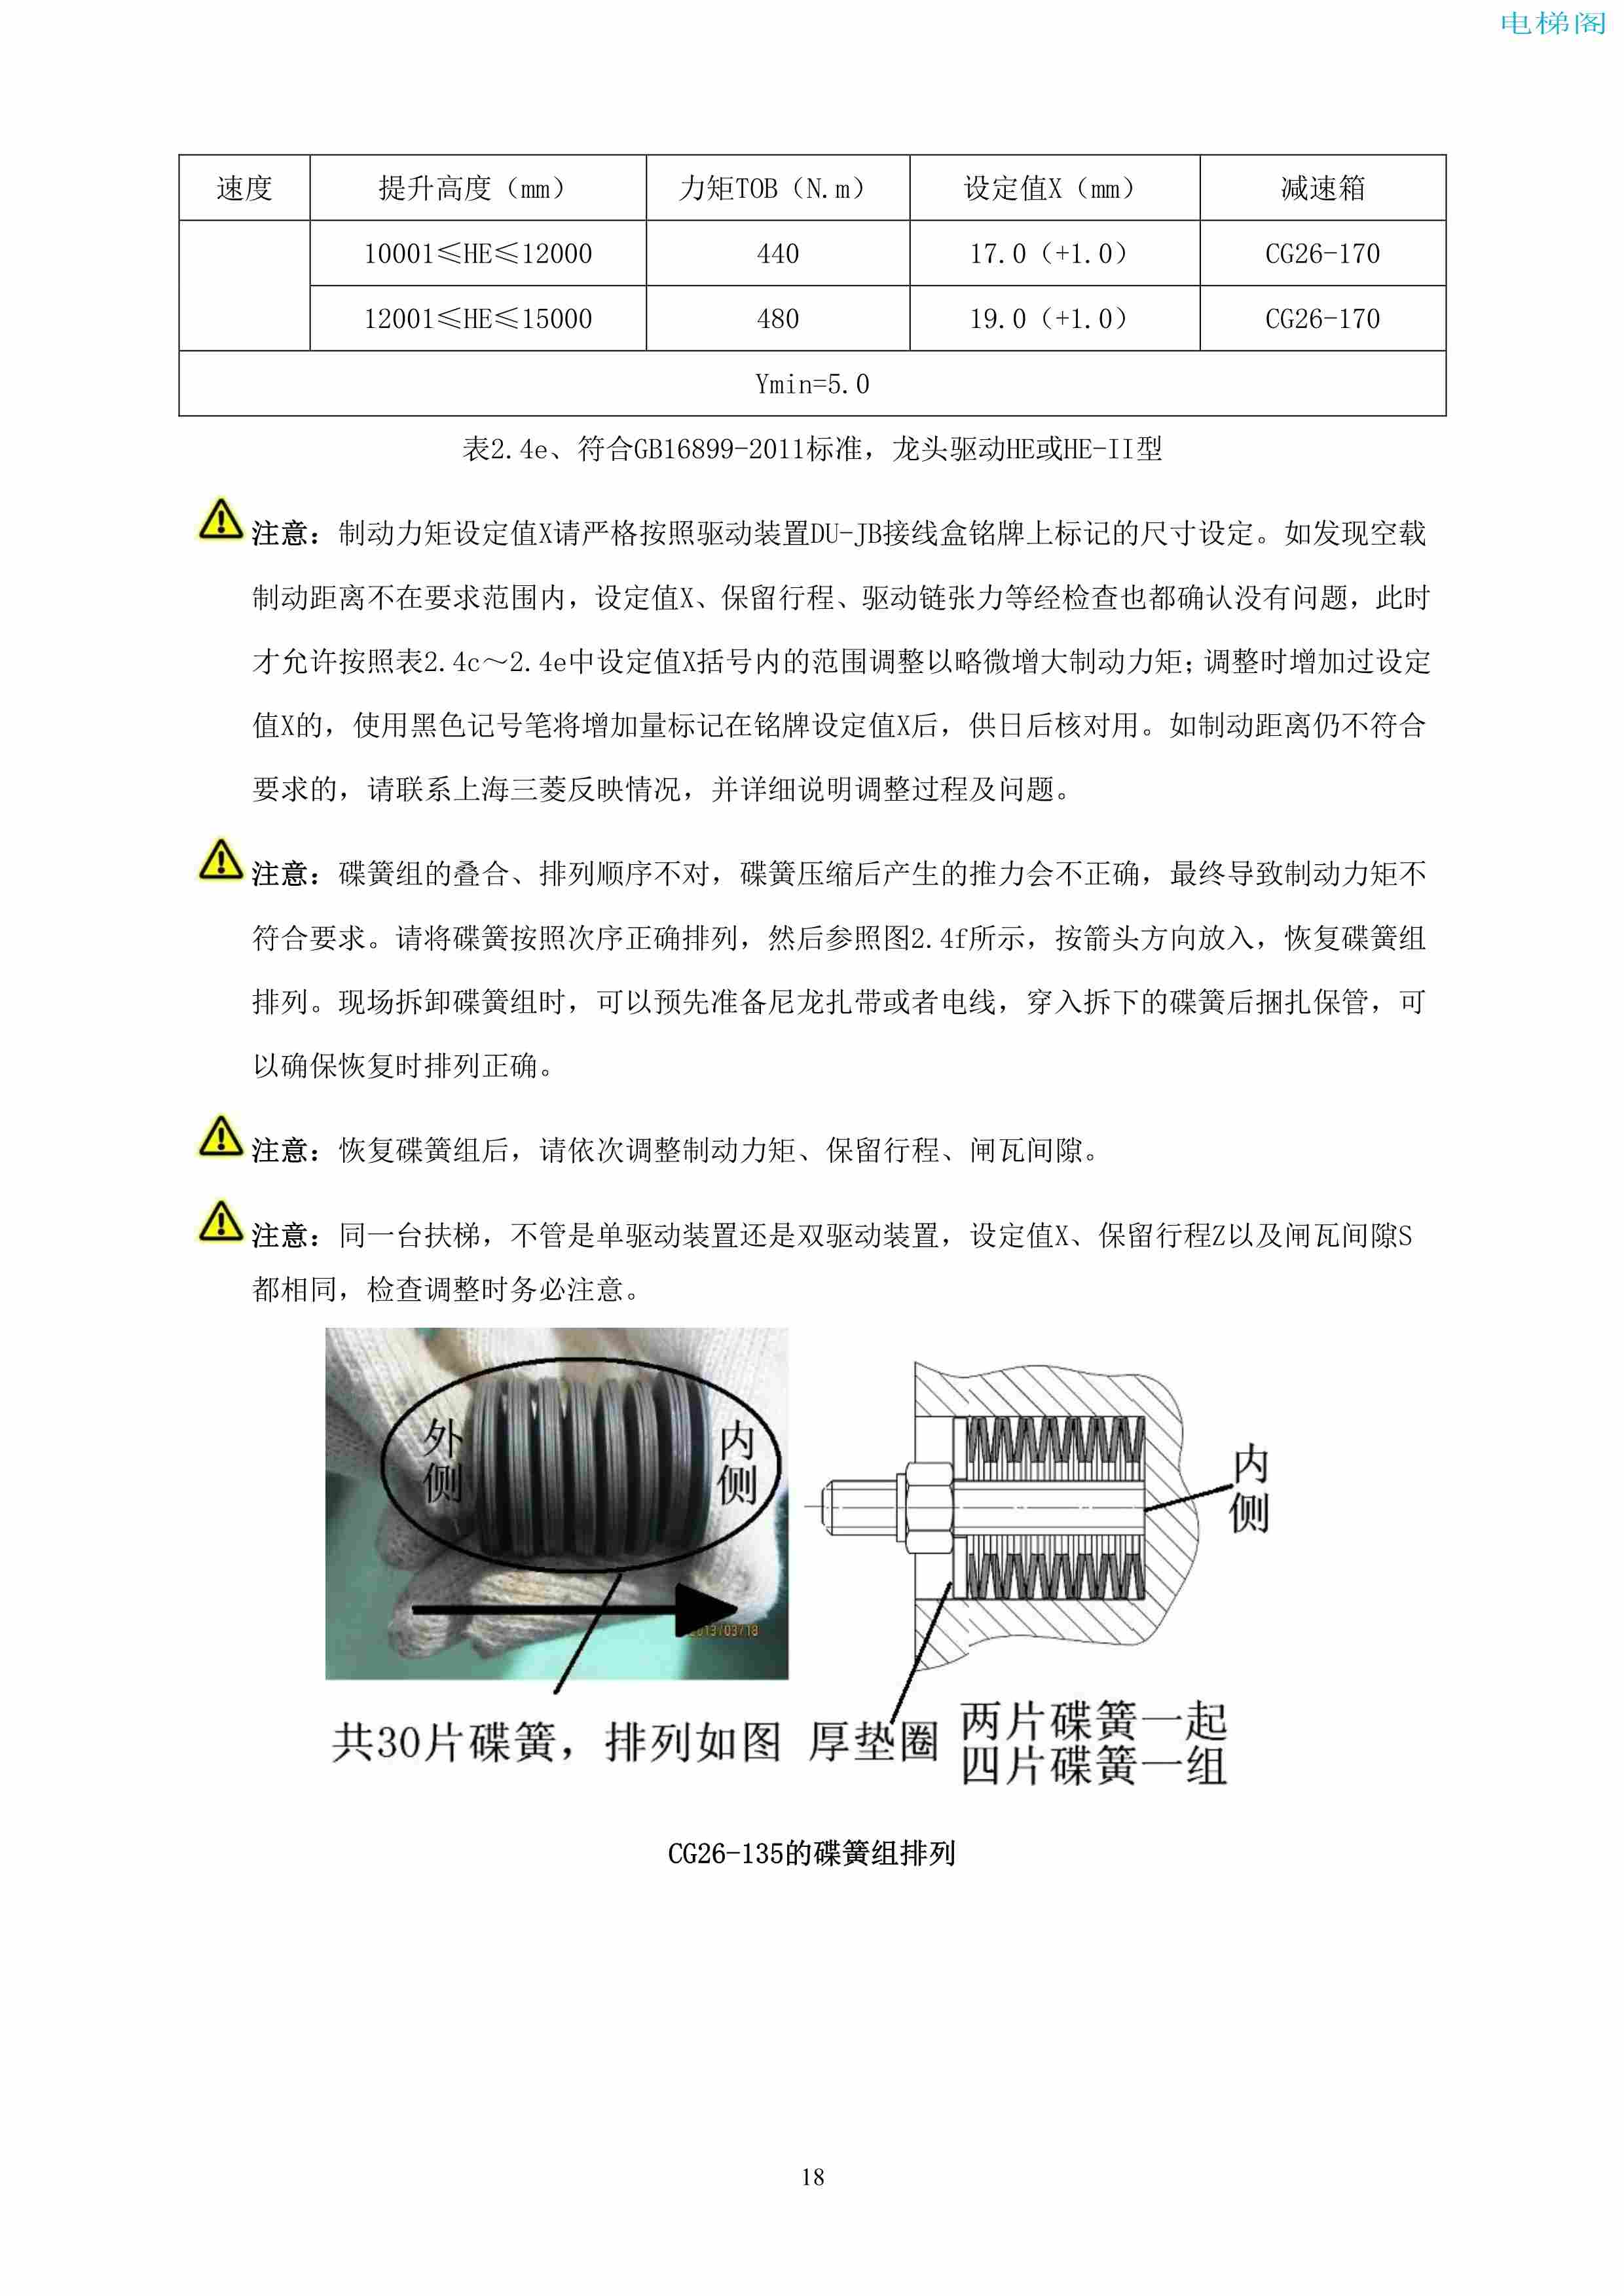 上海三菱电梯有限公司自动扶梯制动器维护作业要领汇编_19.jpg